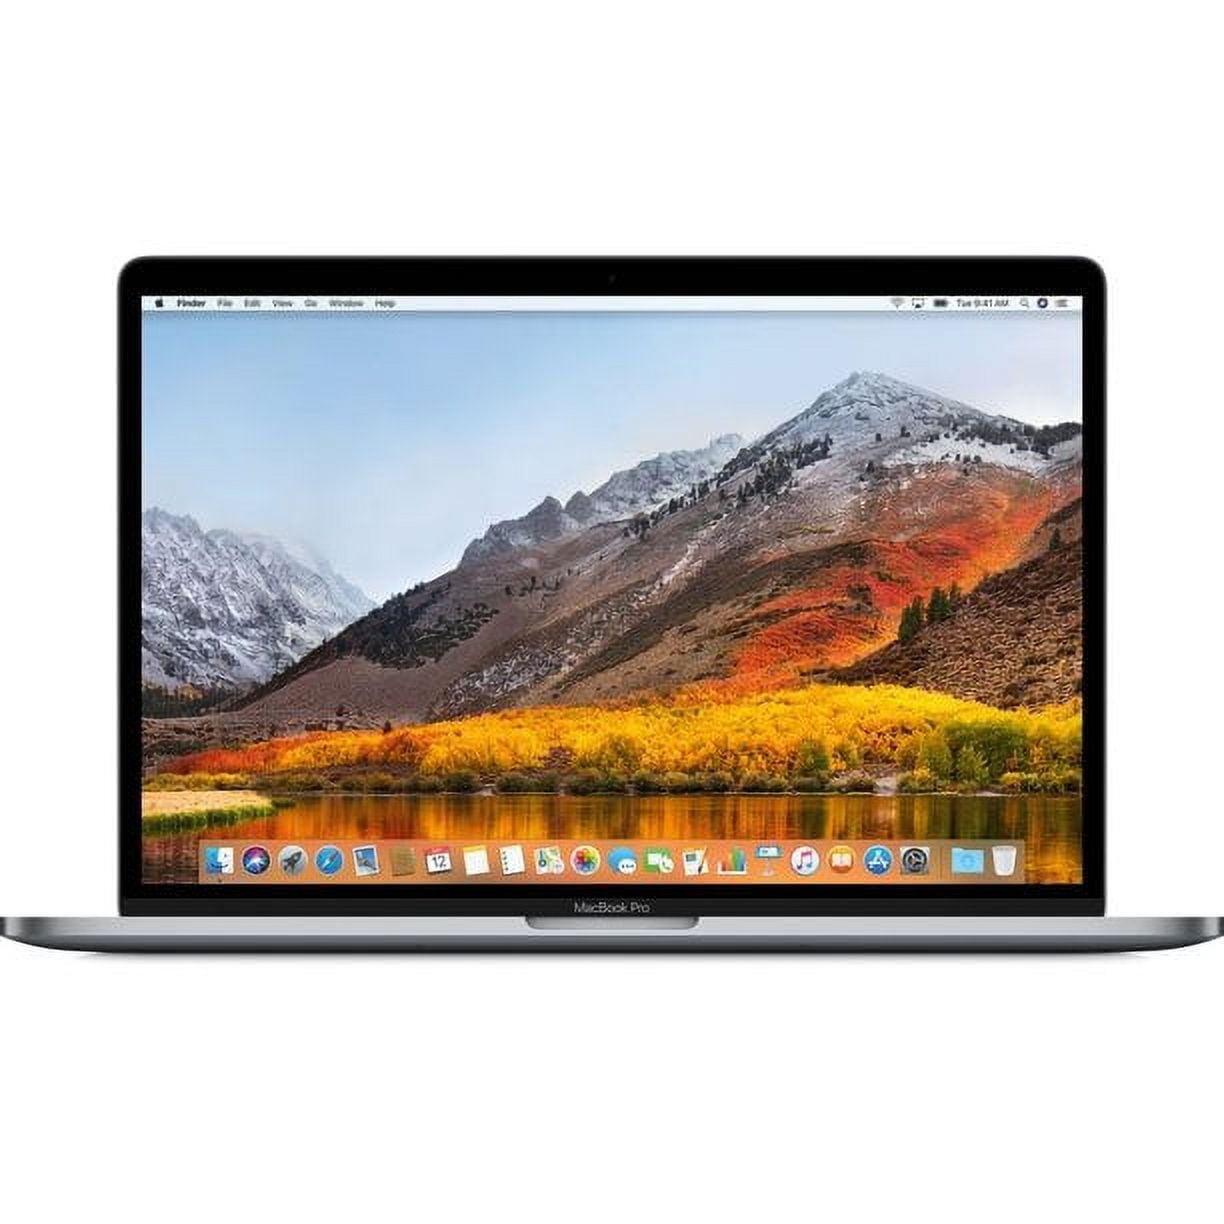 Apple MacBook Pro A1990 15.4